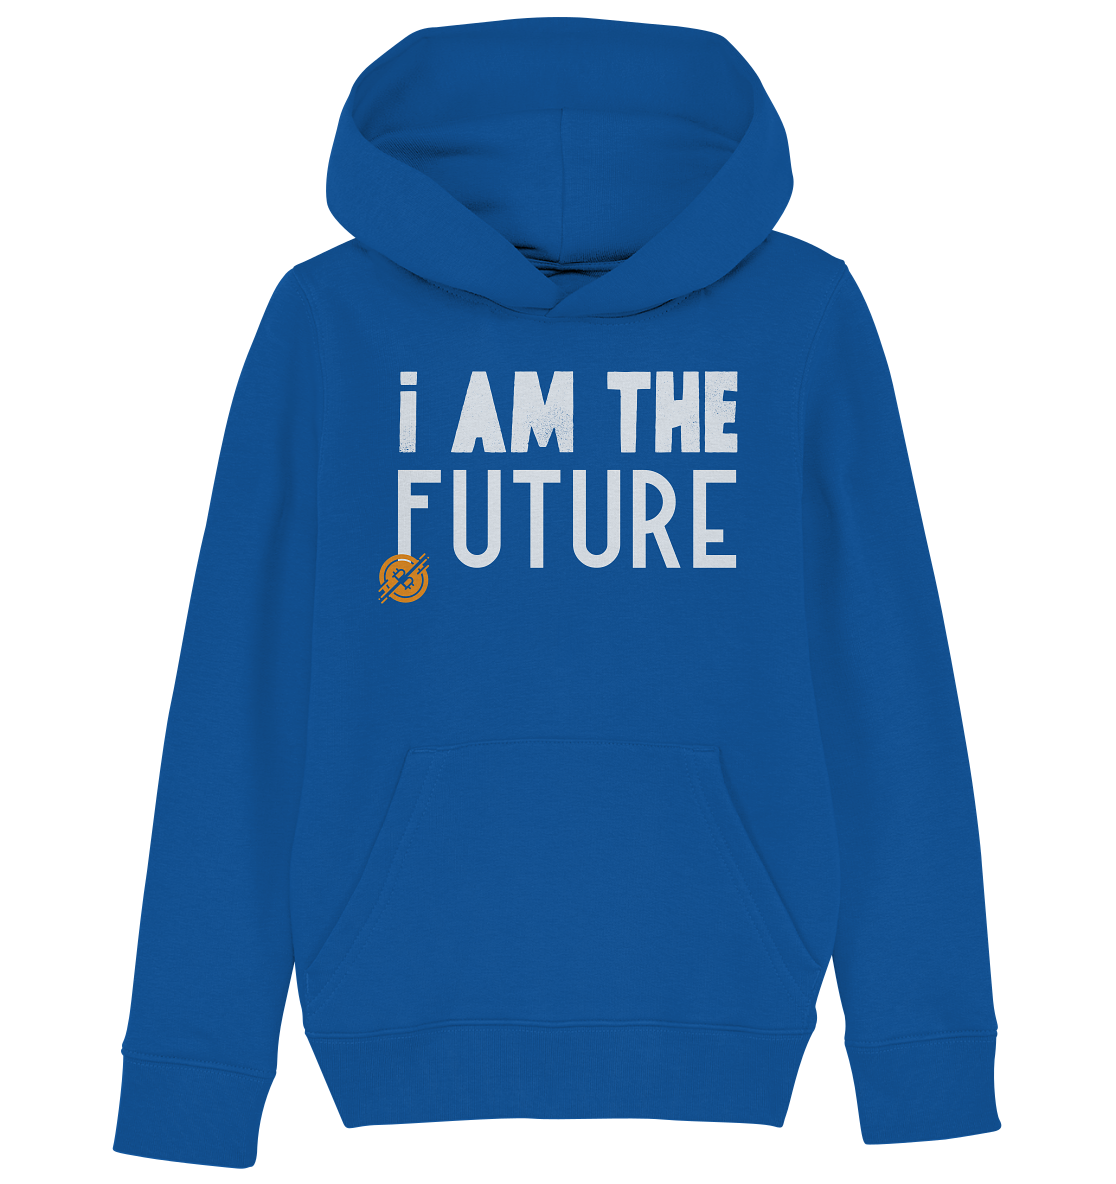 Bitcoin "I am the future" - Kids Organic Hoodie